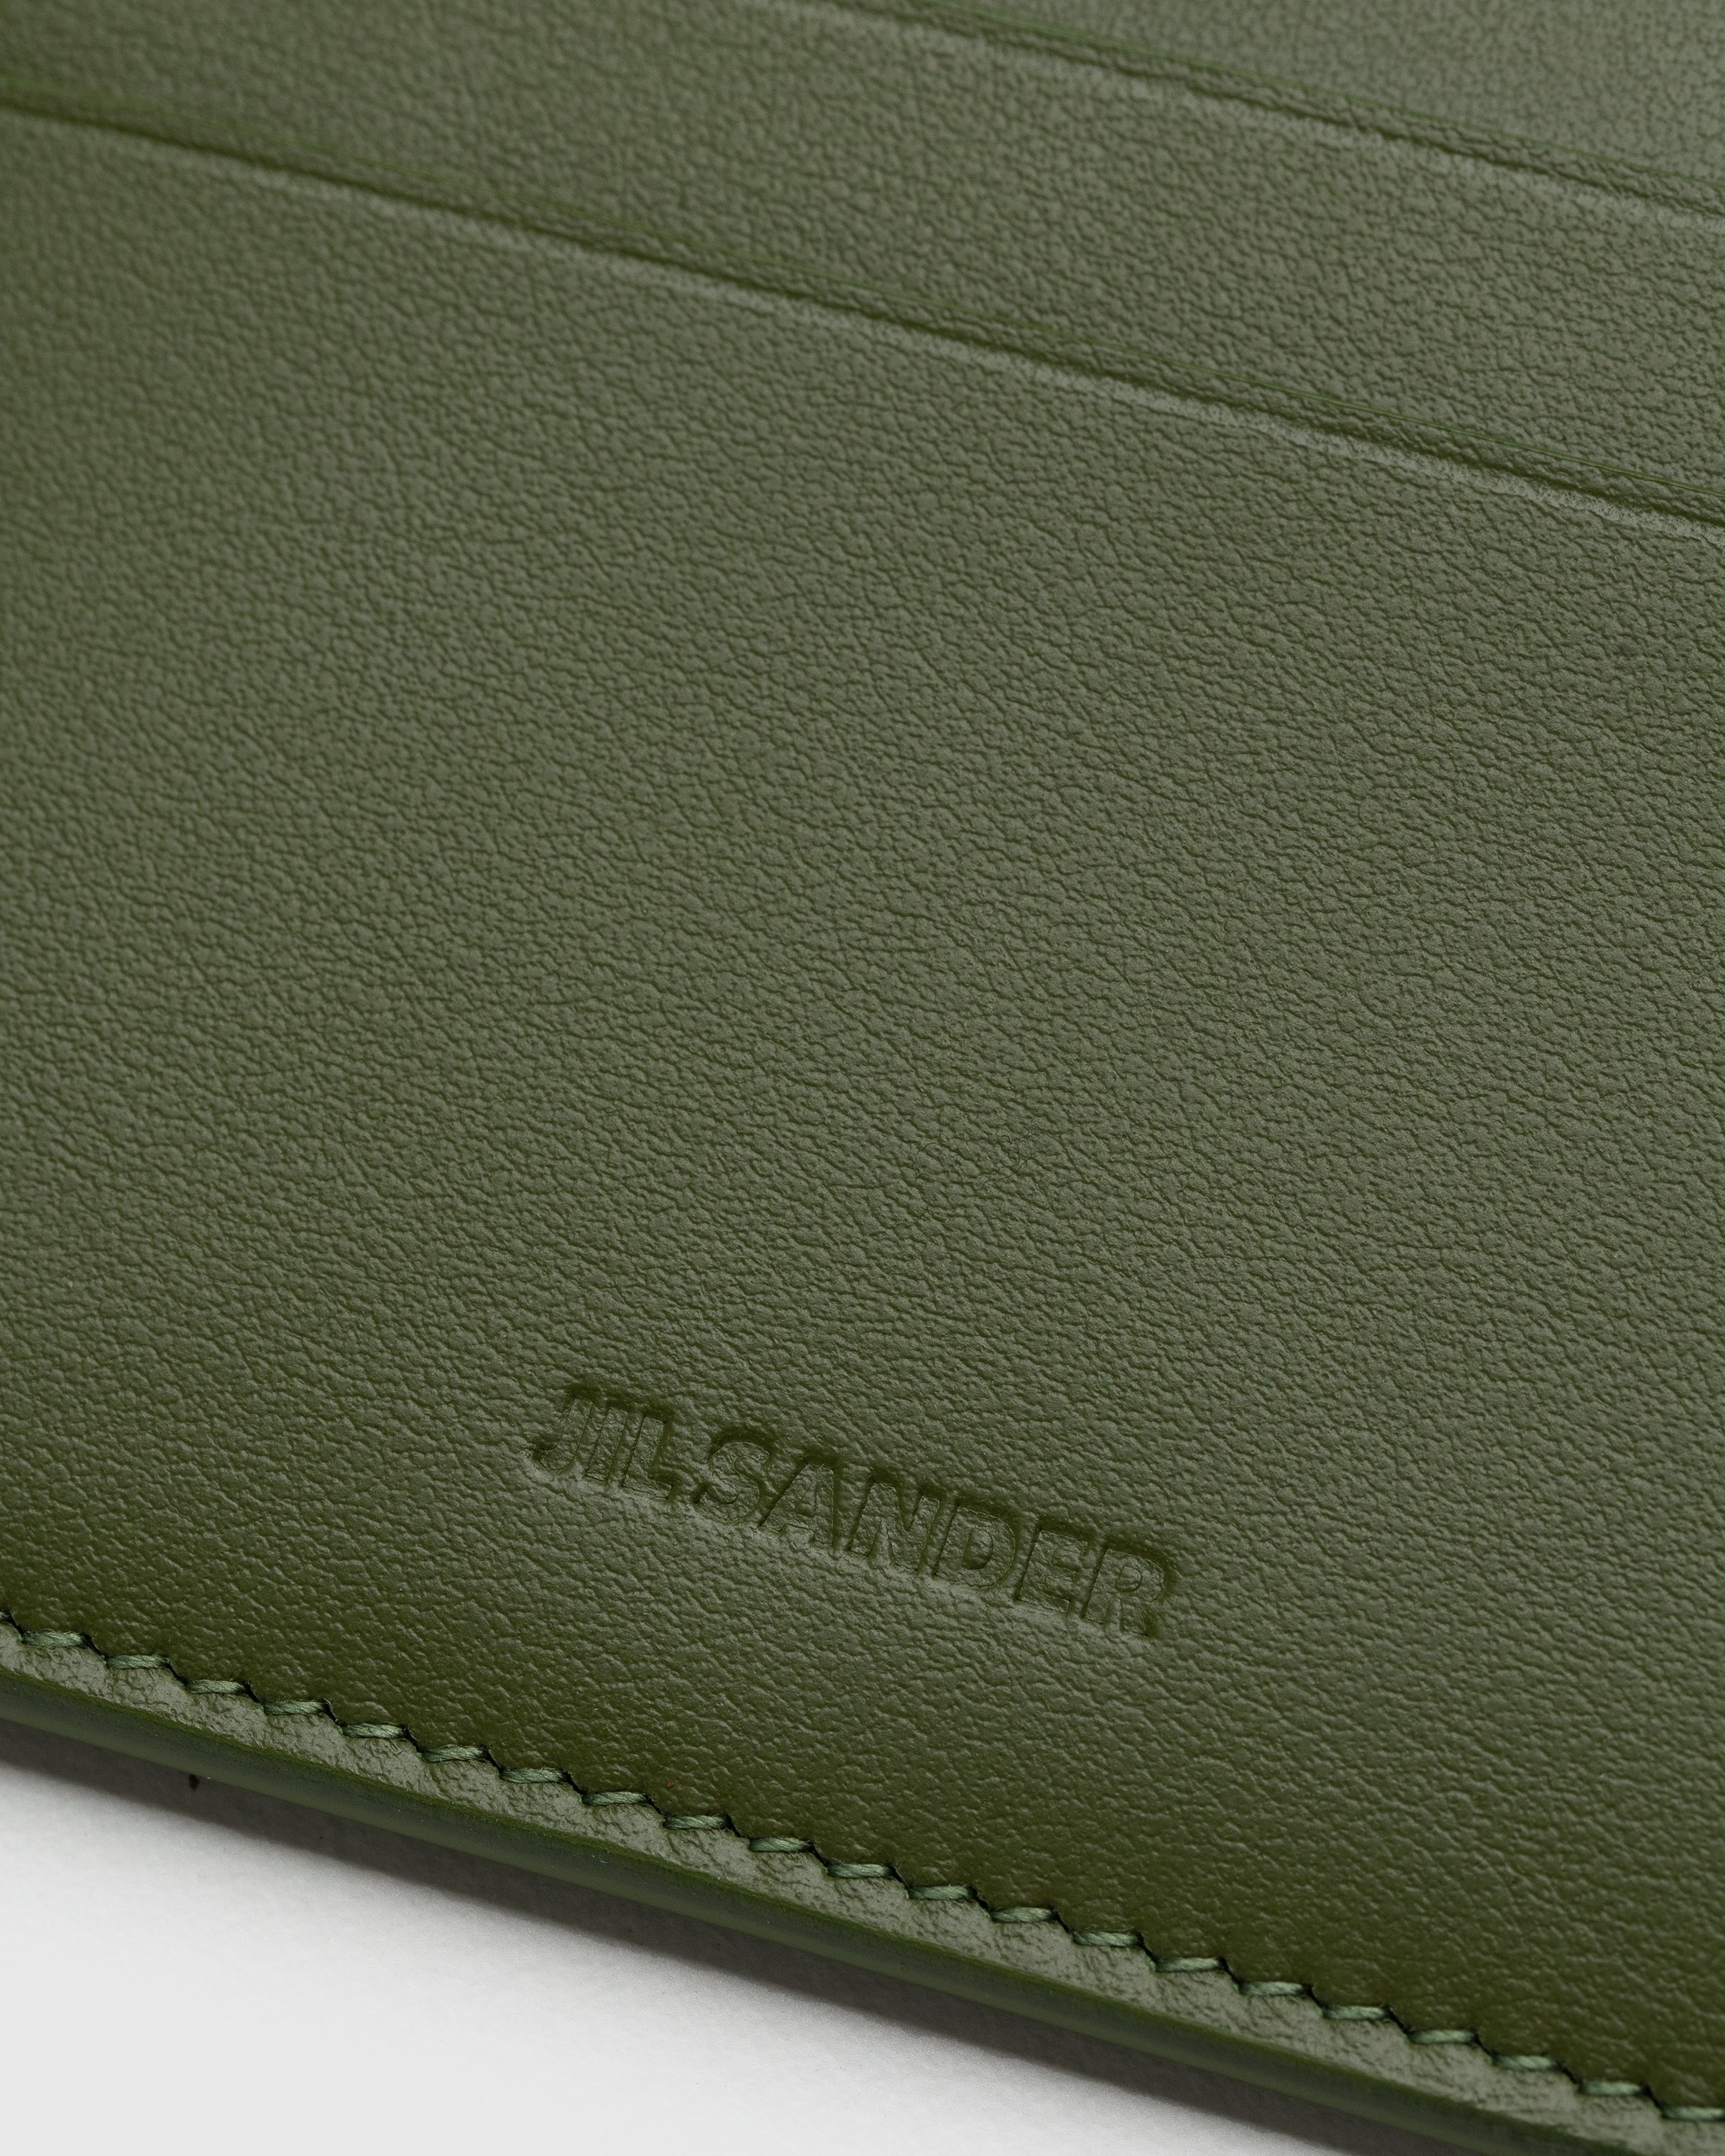 Jil Sander – Leather Card Holder Green - Wallets - Grey - Image 4